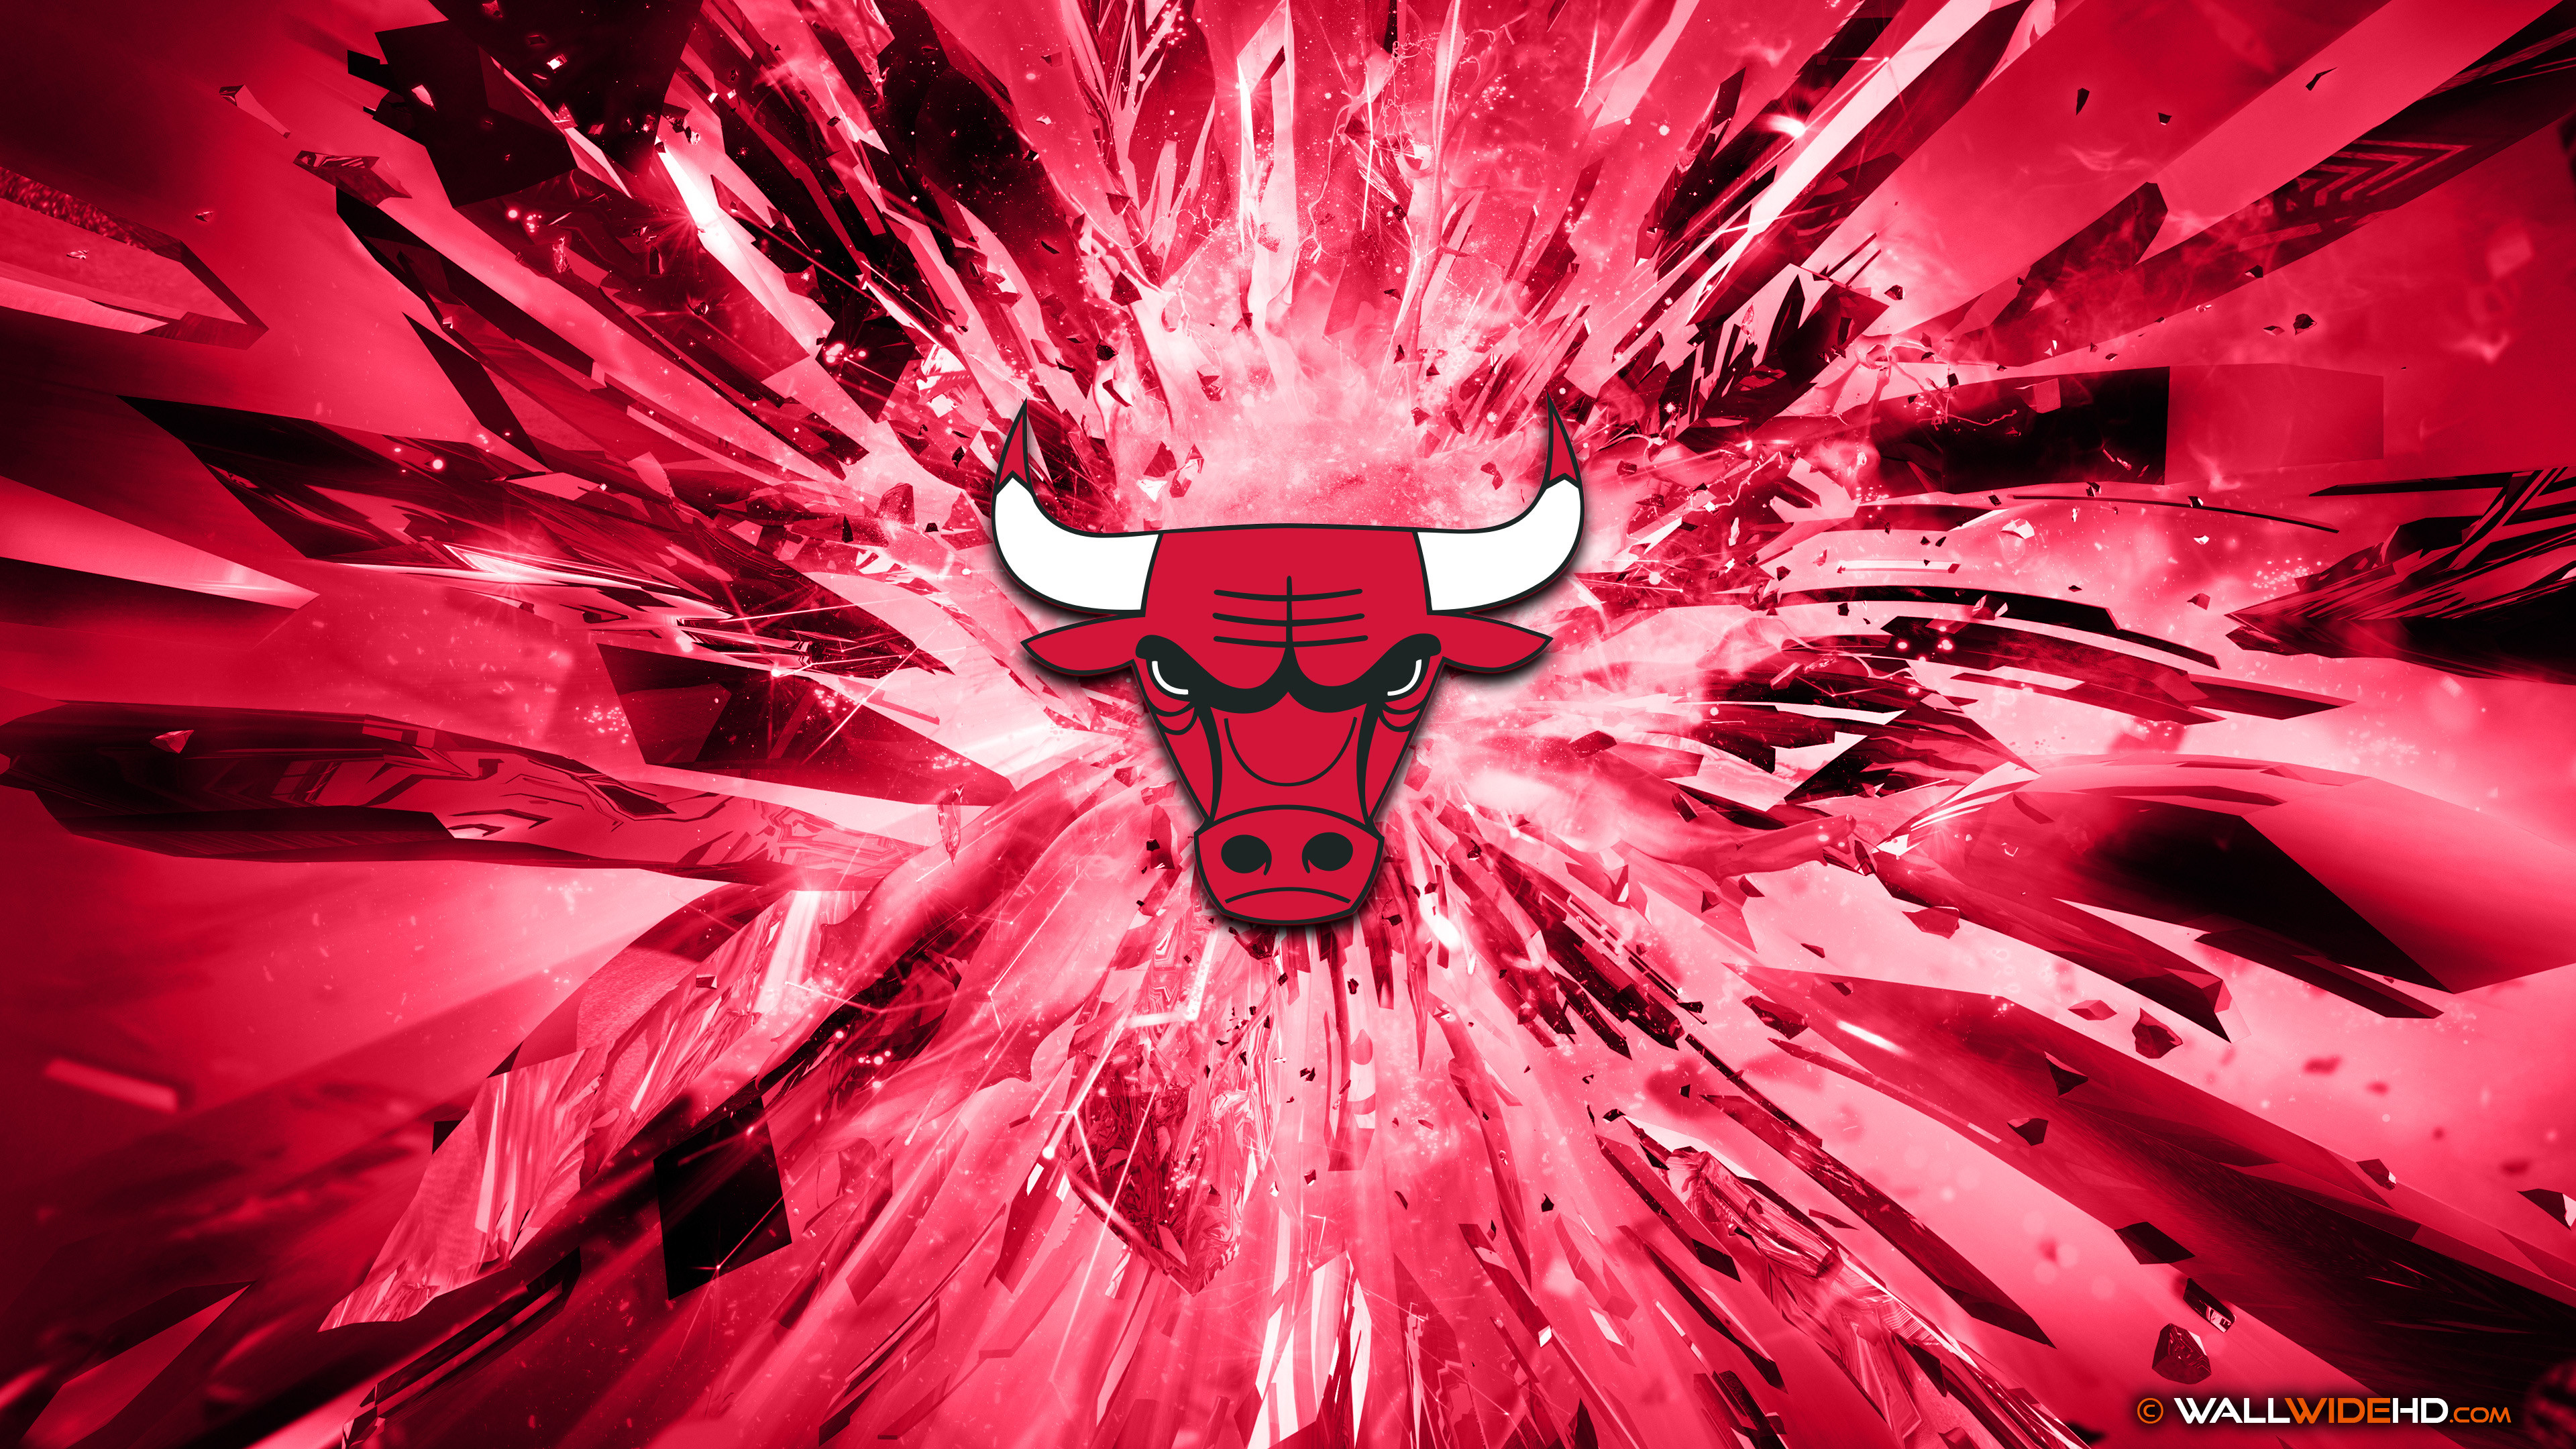 3840x2160 Chicago Bulls 2015 Logo basketball 4K Wallpaper 